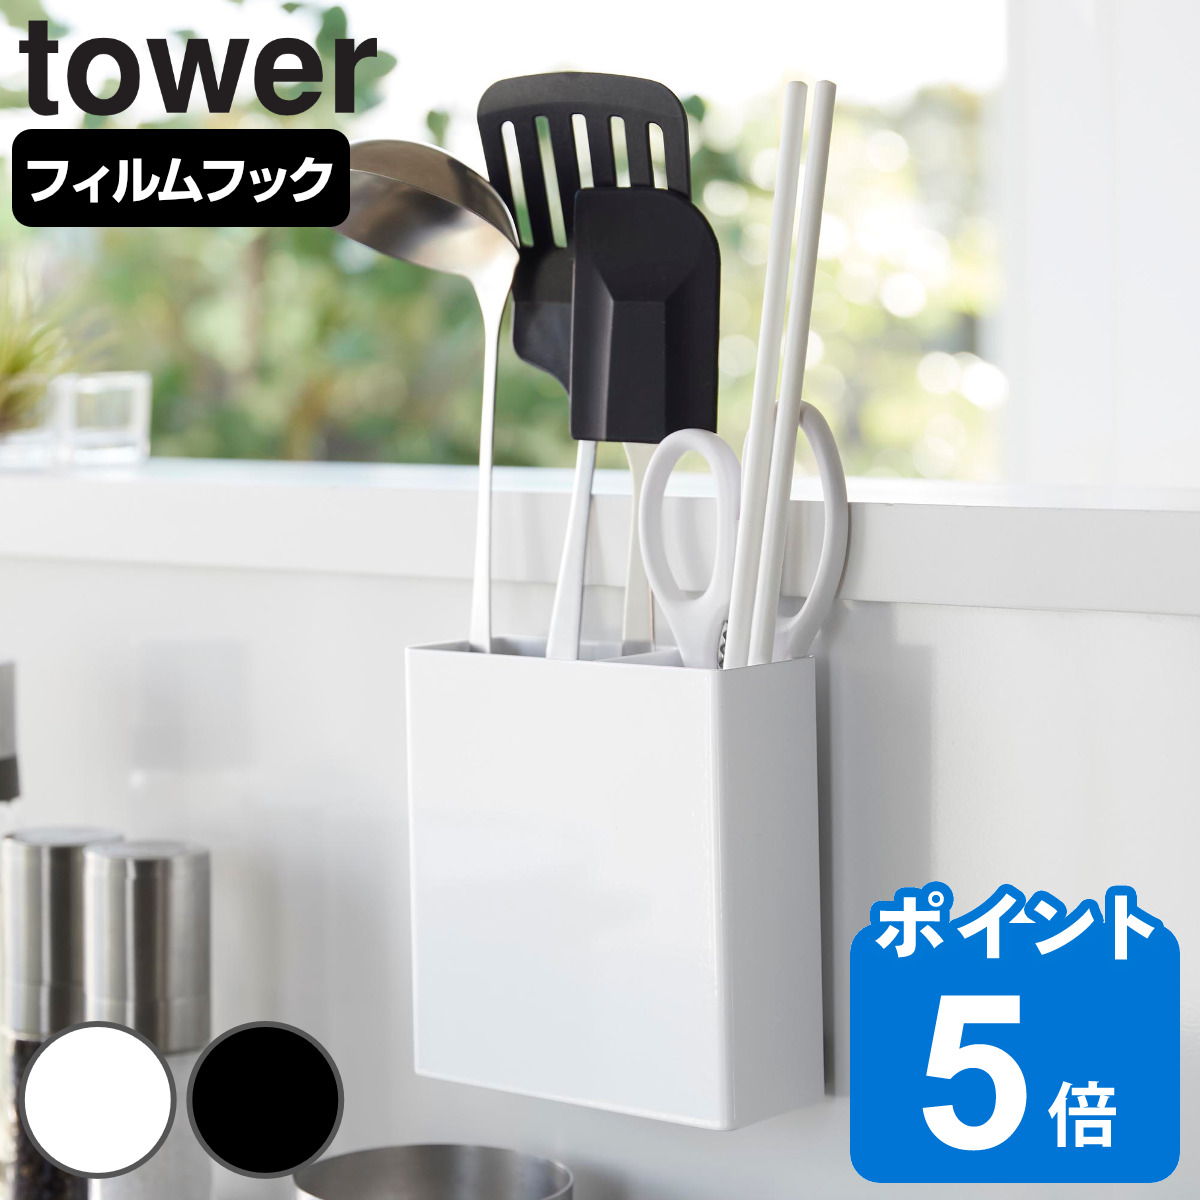 山崎実業 towerフィルムフックキッチンツールホルダー タワー